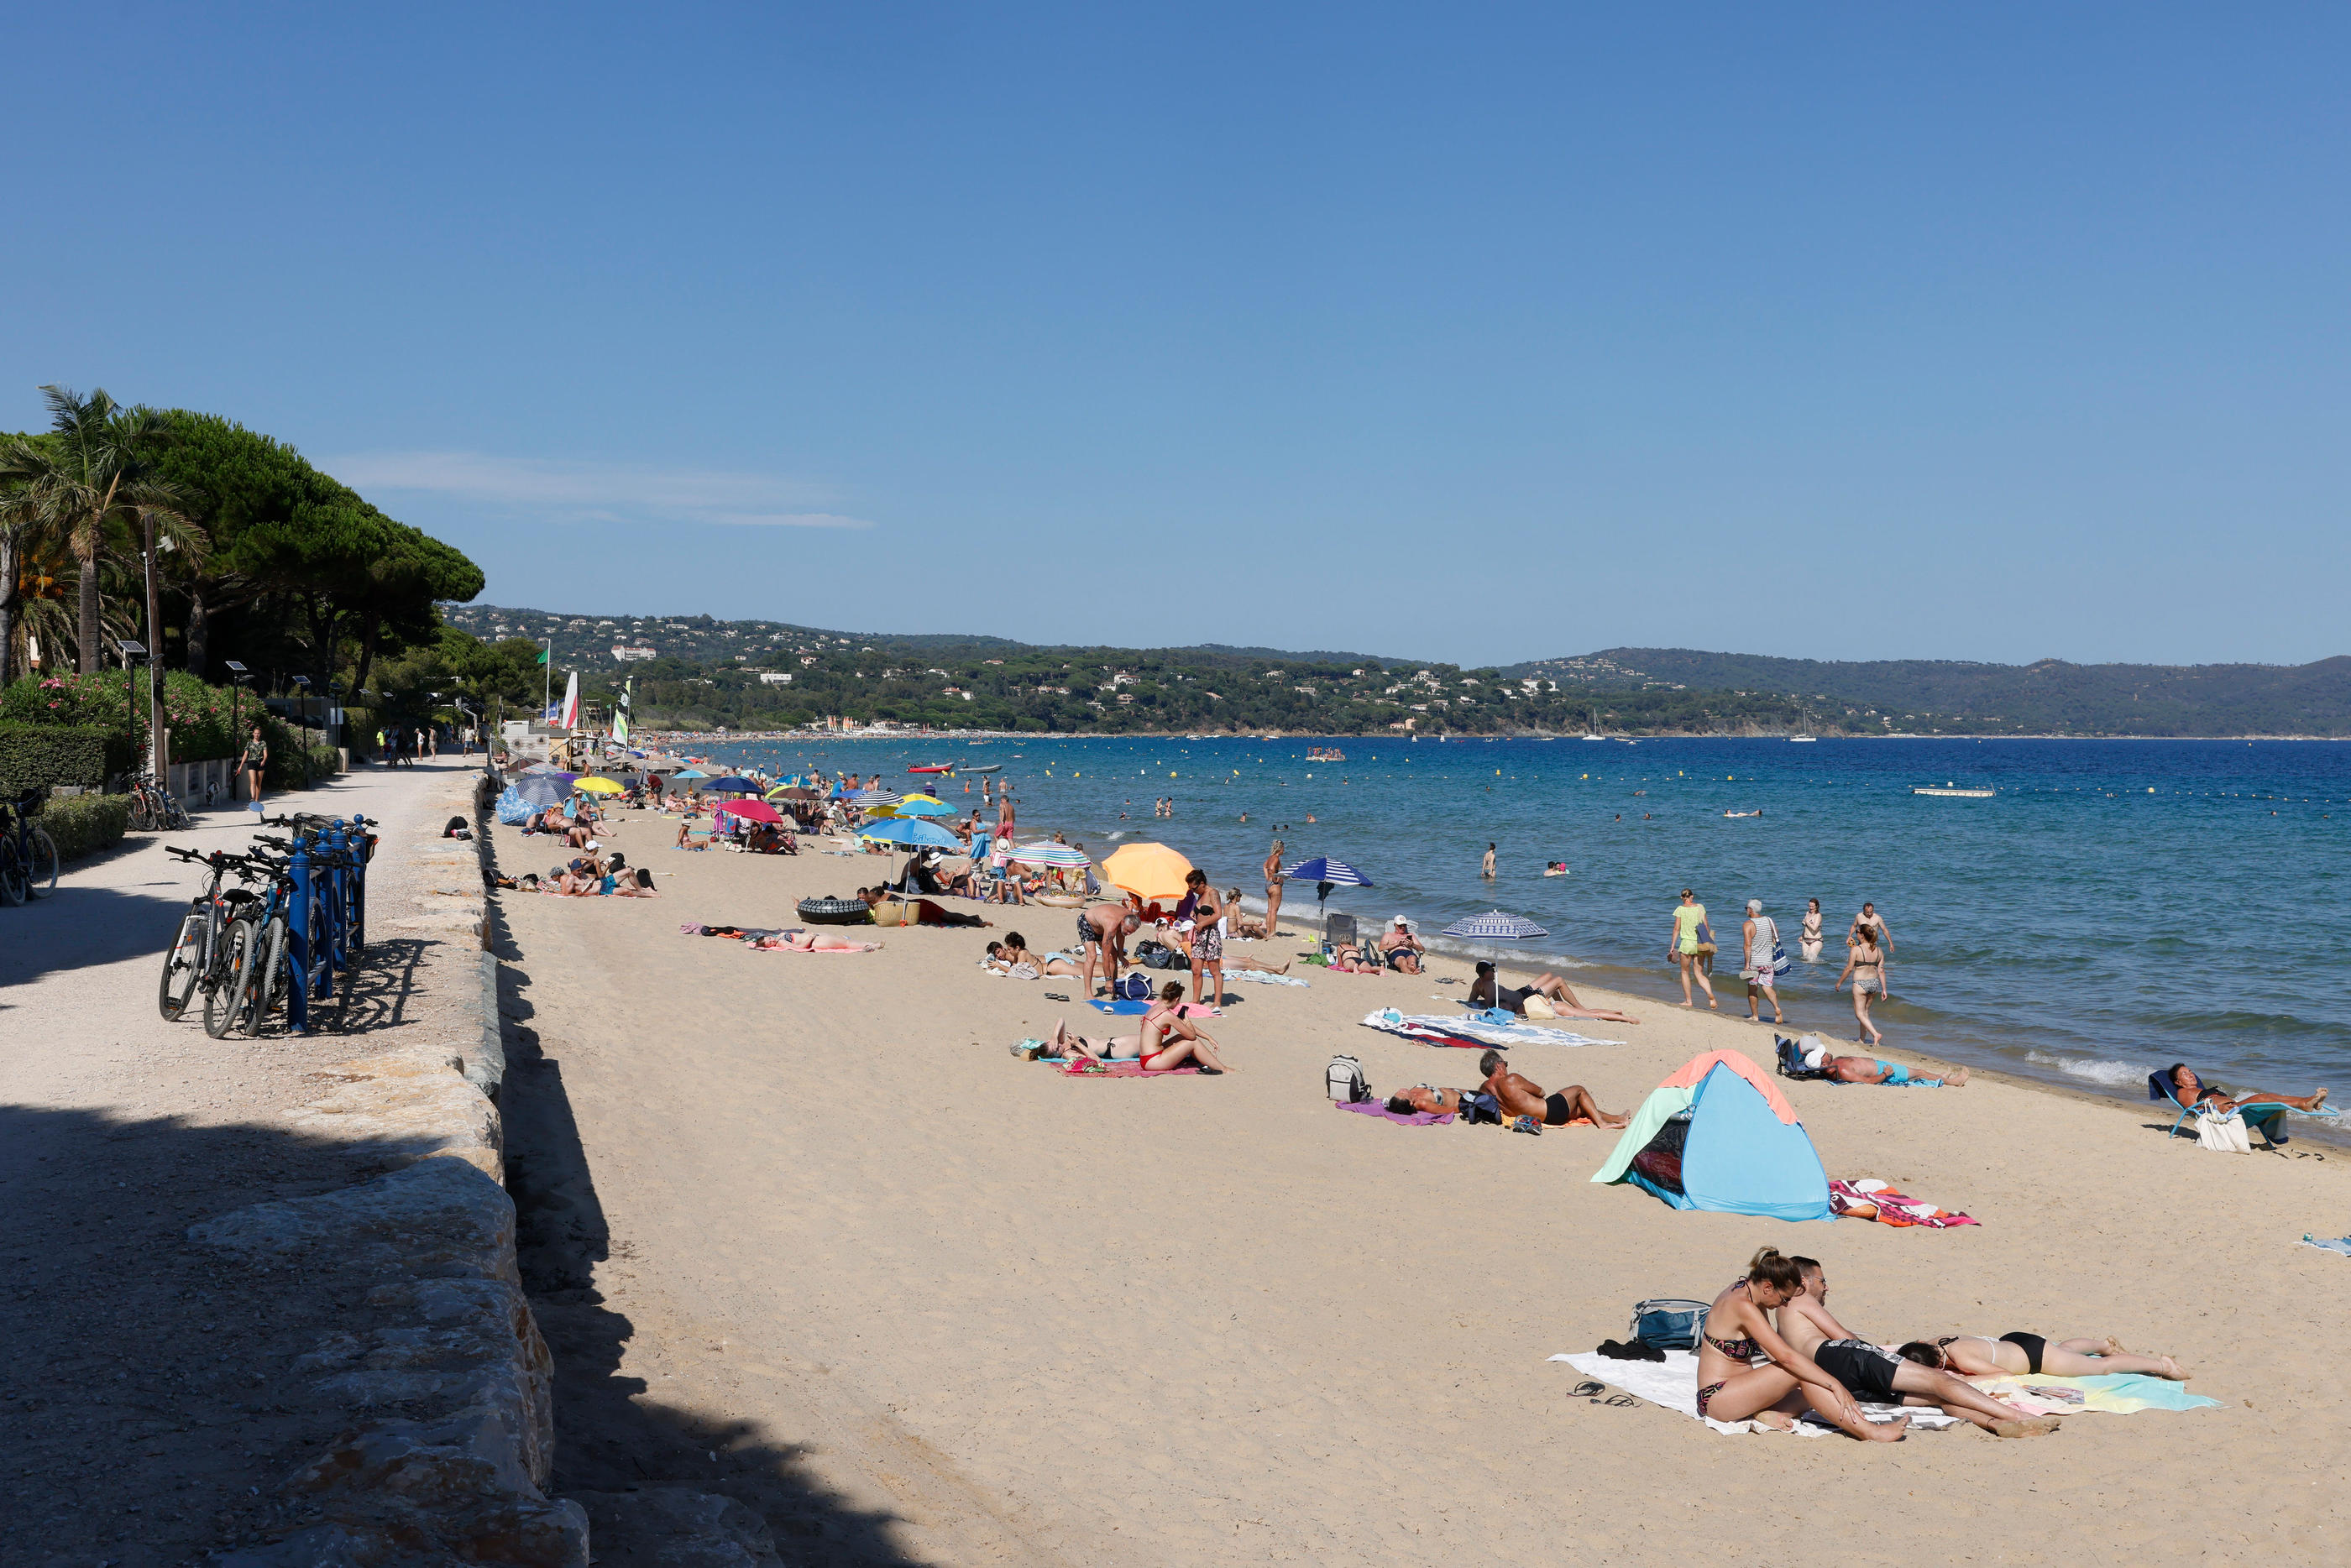 Alors que les températures battent des records cet été, les vacanciers profitent de la plage, comme ici, à Cavalaire-sur-Mer (Var), le 11 juillet. LP/ Olivier Corsan